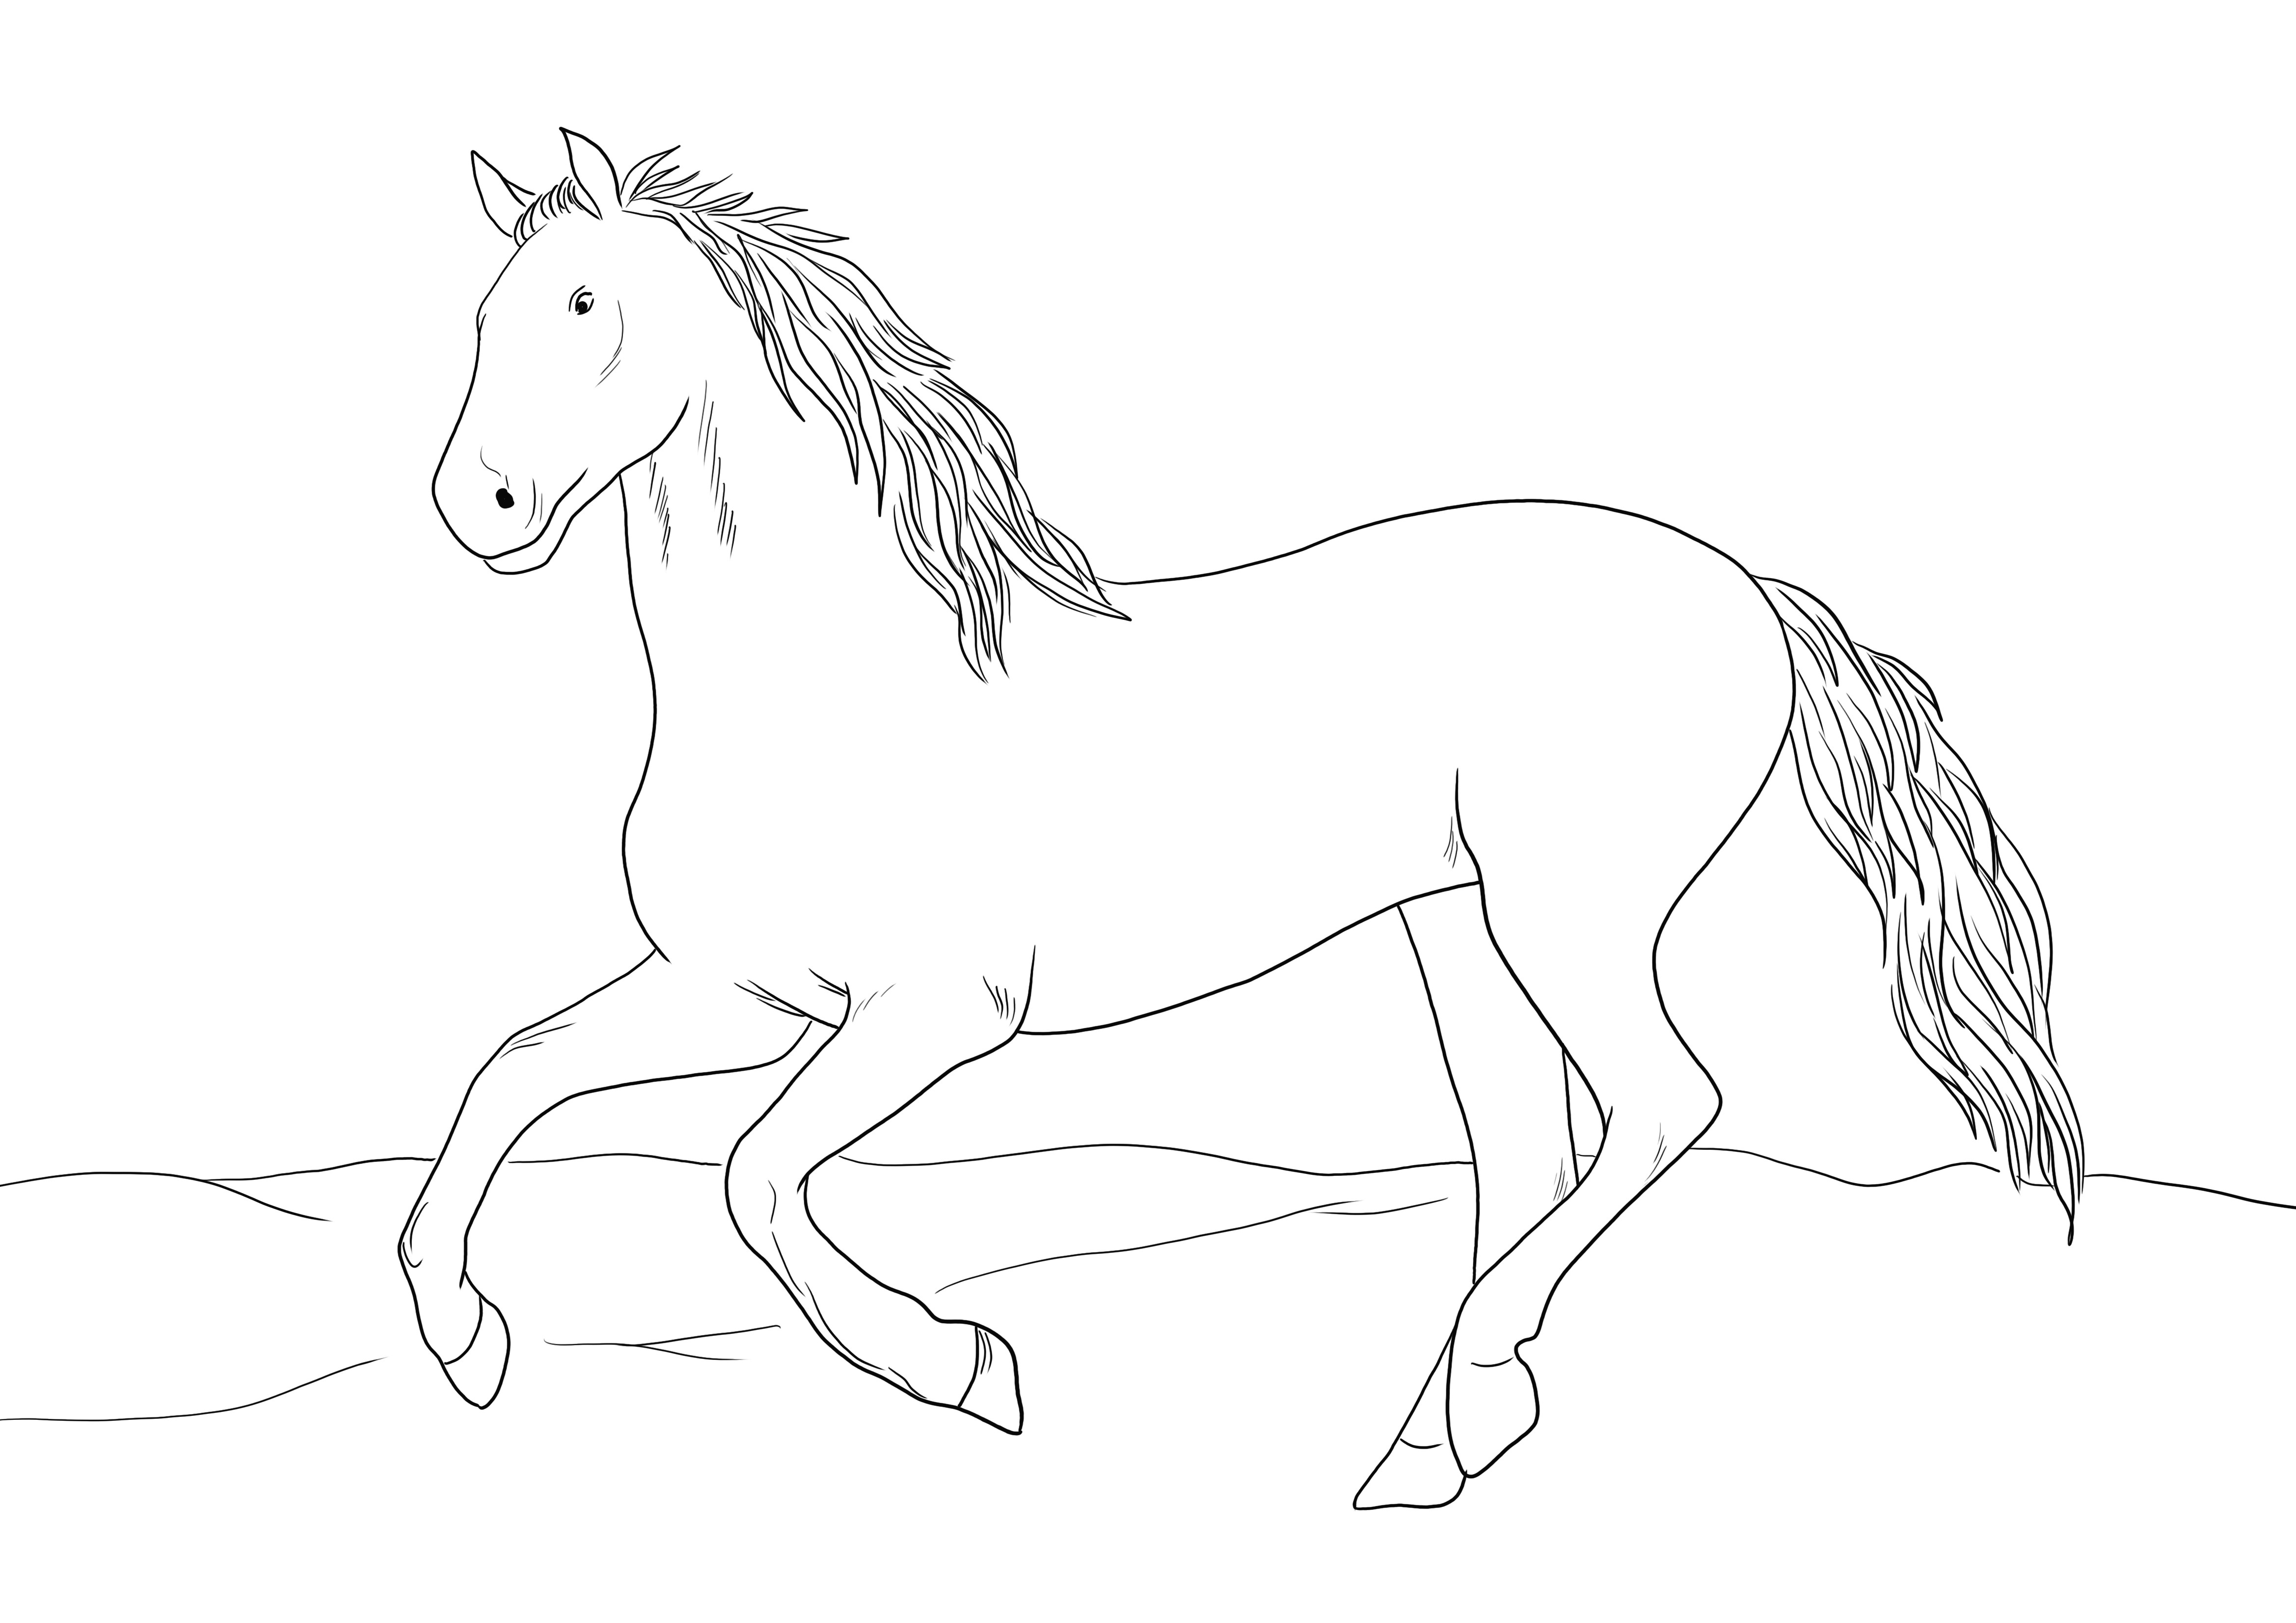 Immagine da colorare di un grazioso cavallo andaluso da stampare o scaricare gratuitamente